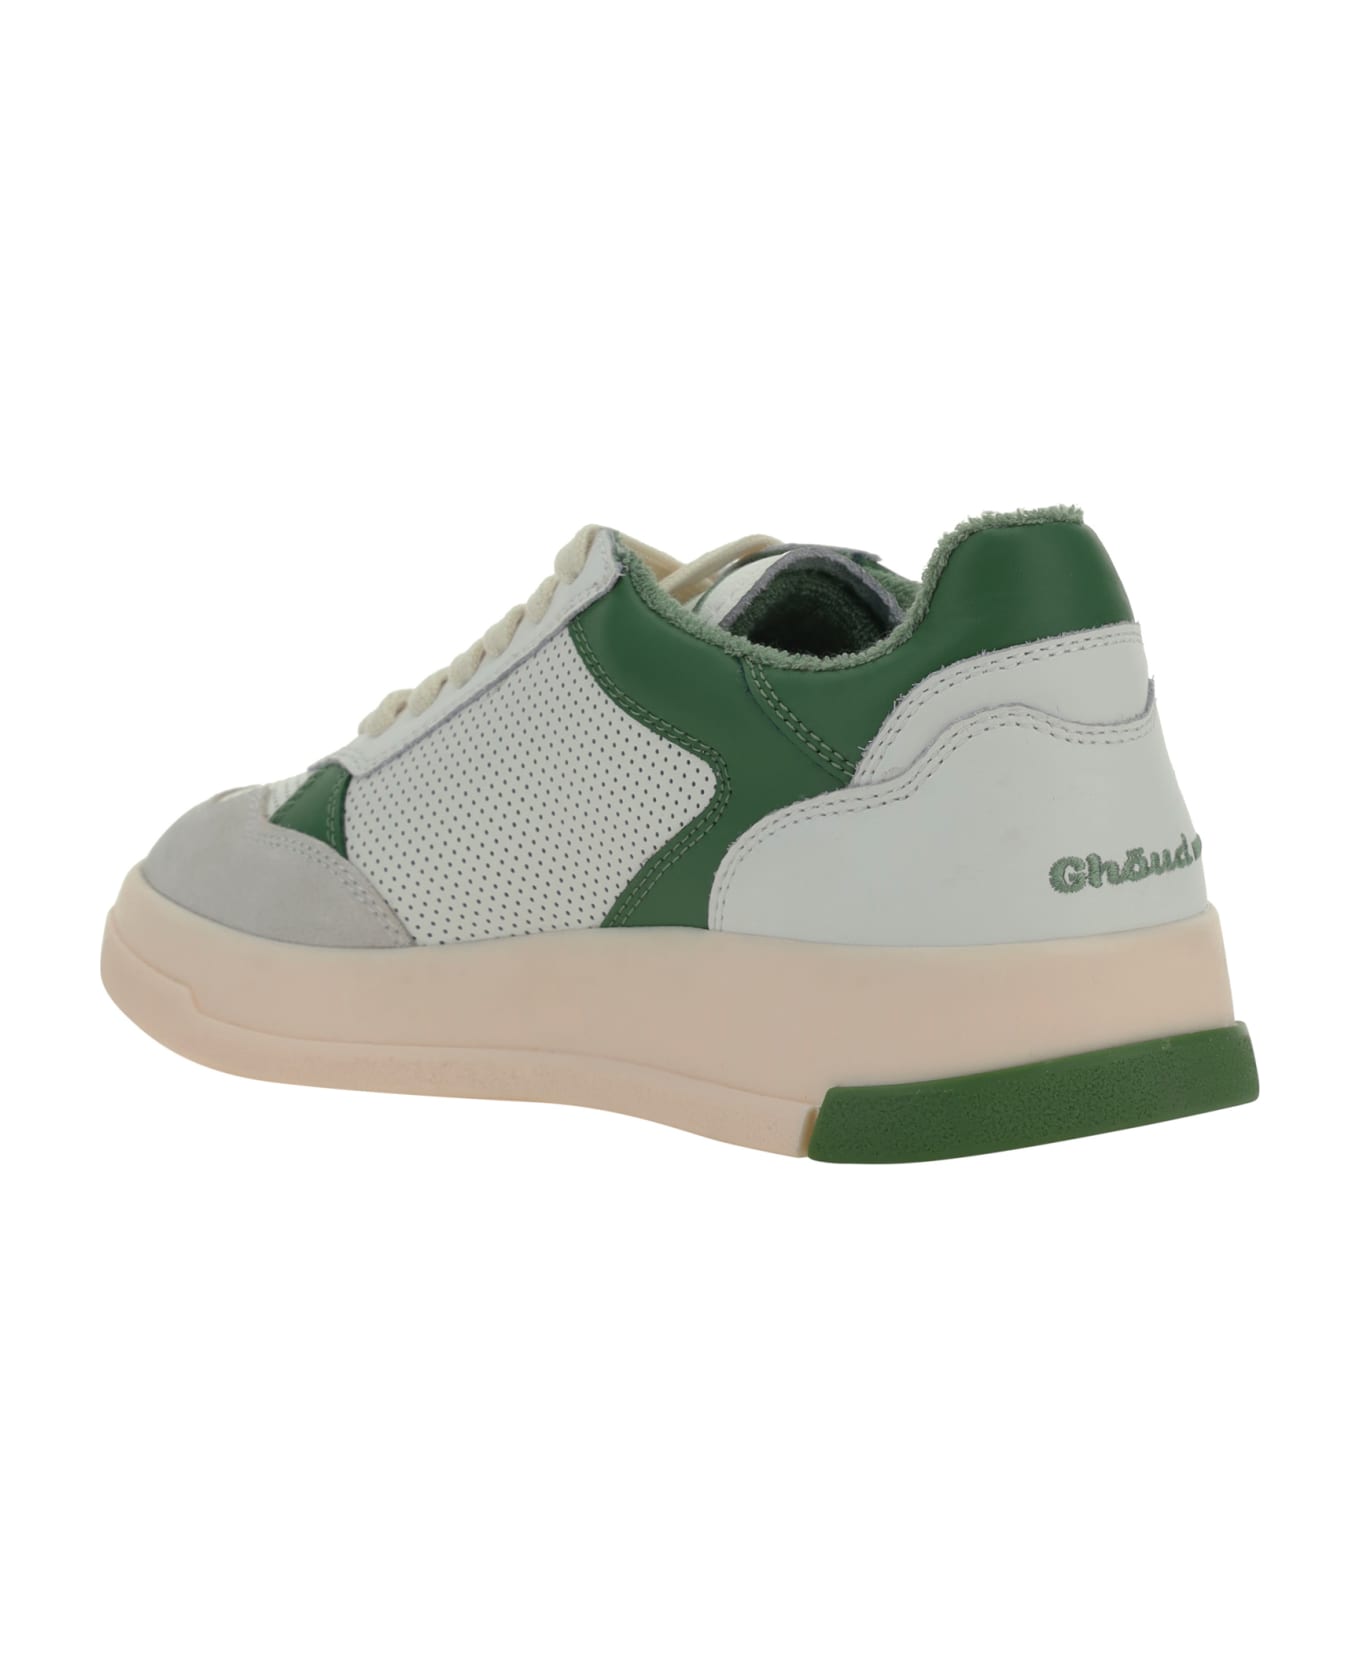 GHOUD Tweener Sneakers - Wht/grn